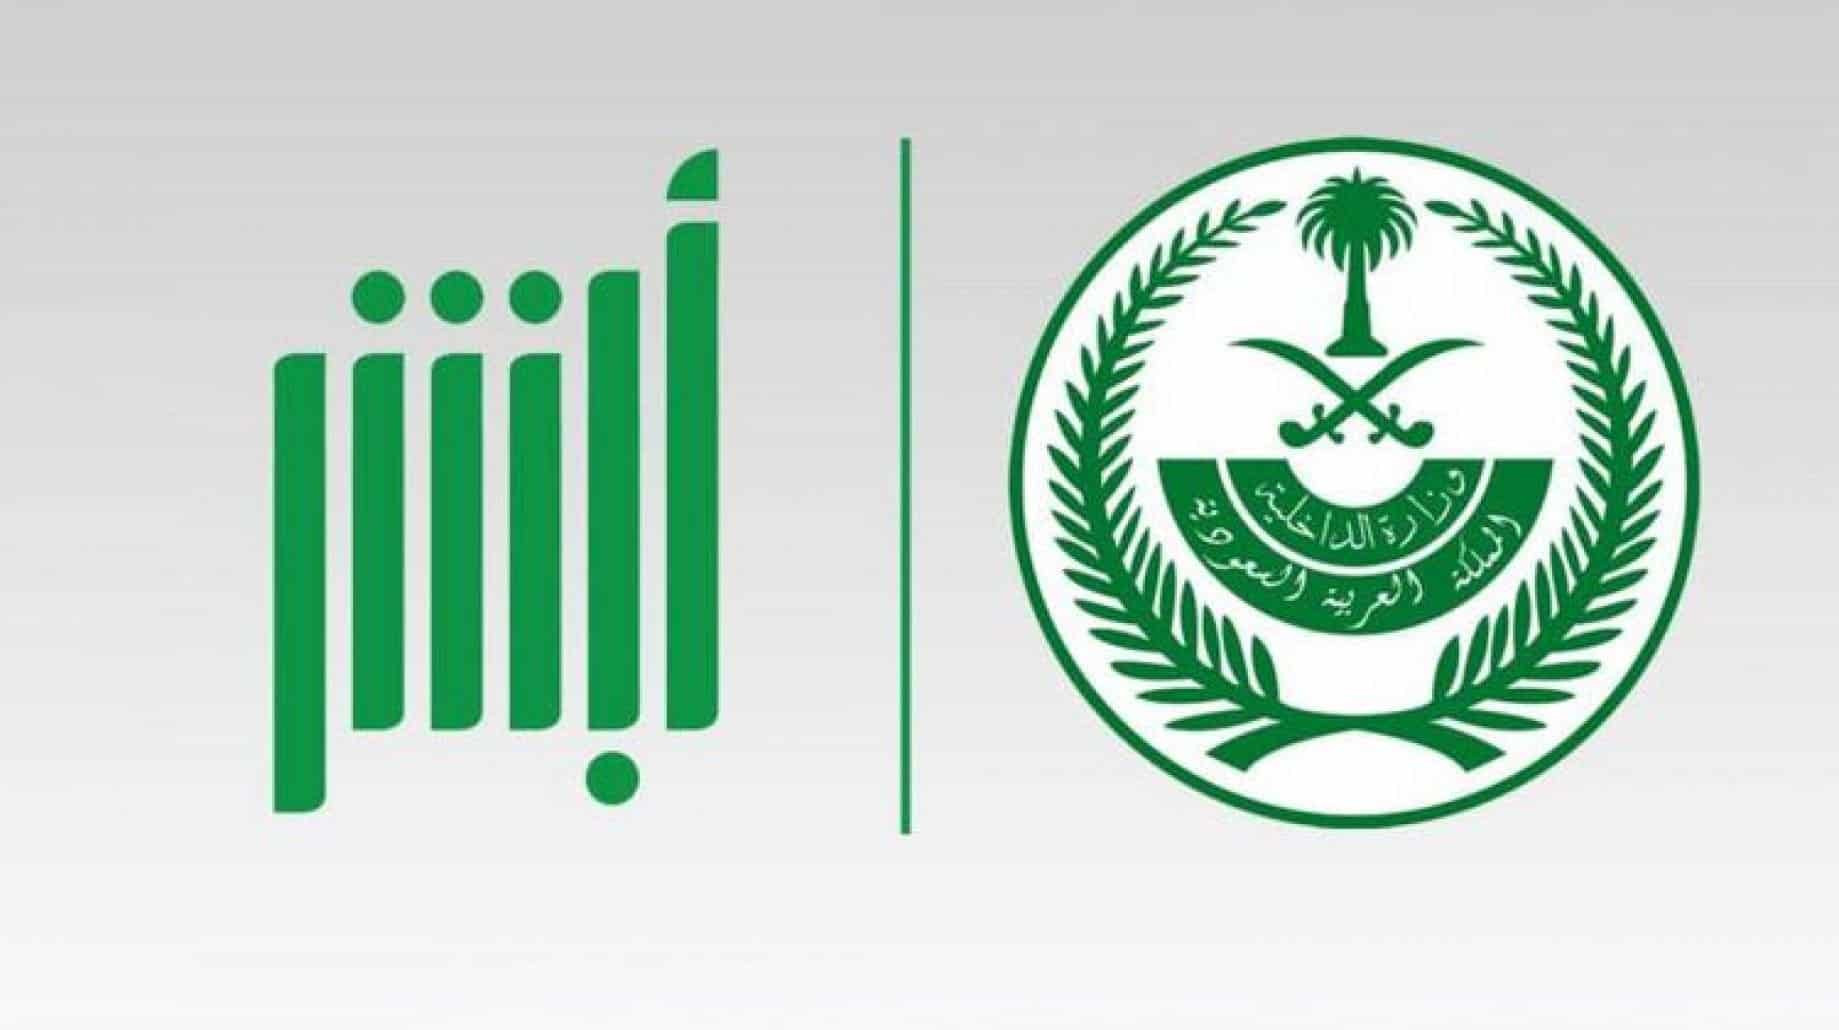 تجديد رخصة قيادة منتهية في السعودية إلكترونيا.. إليكم الطريقة 2